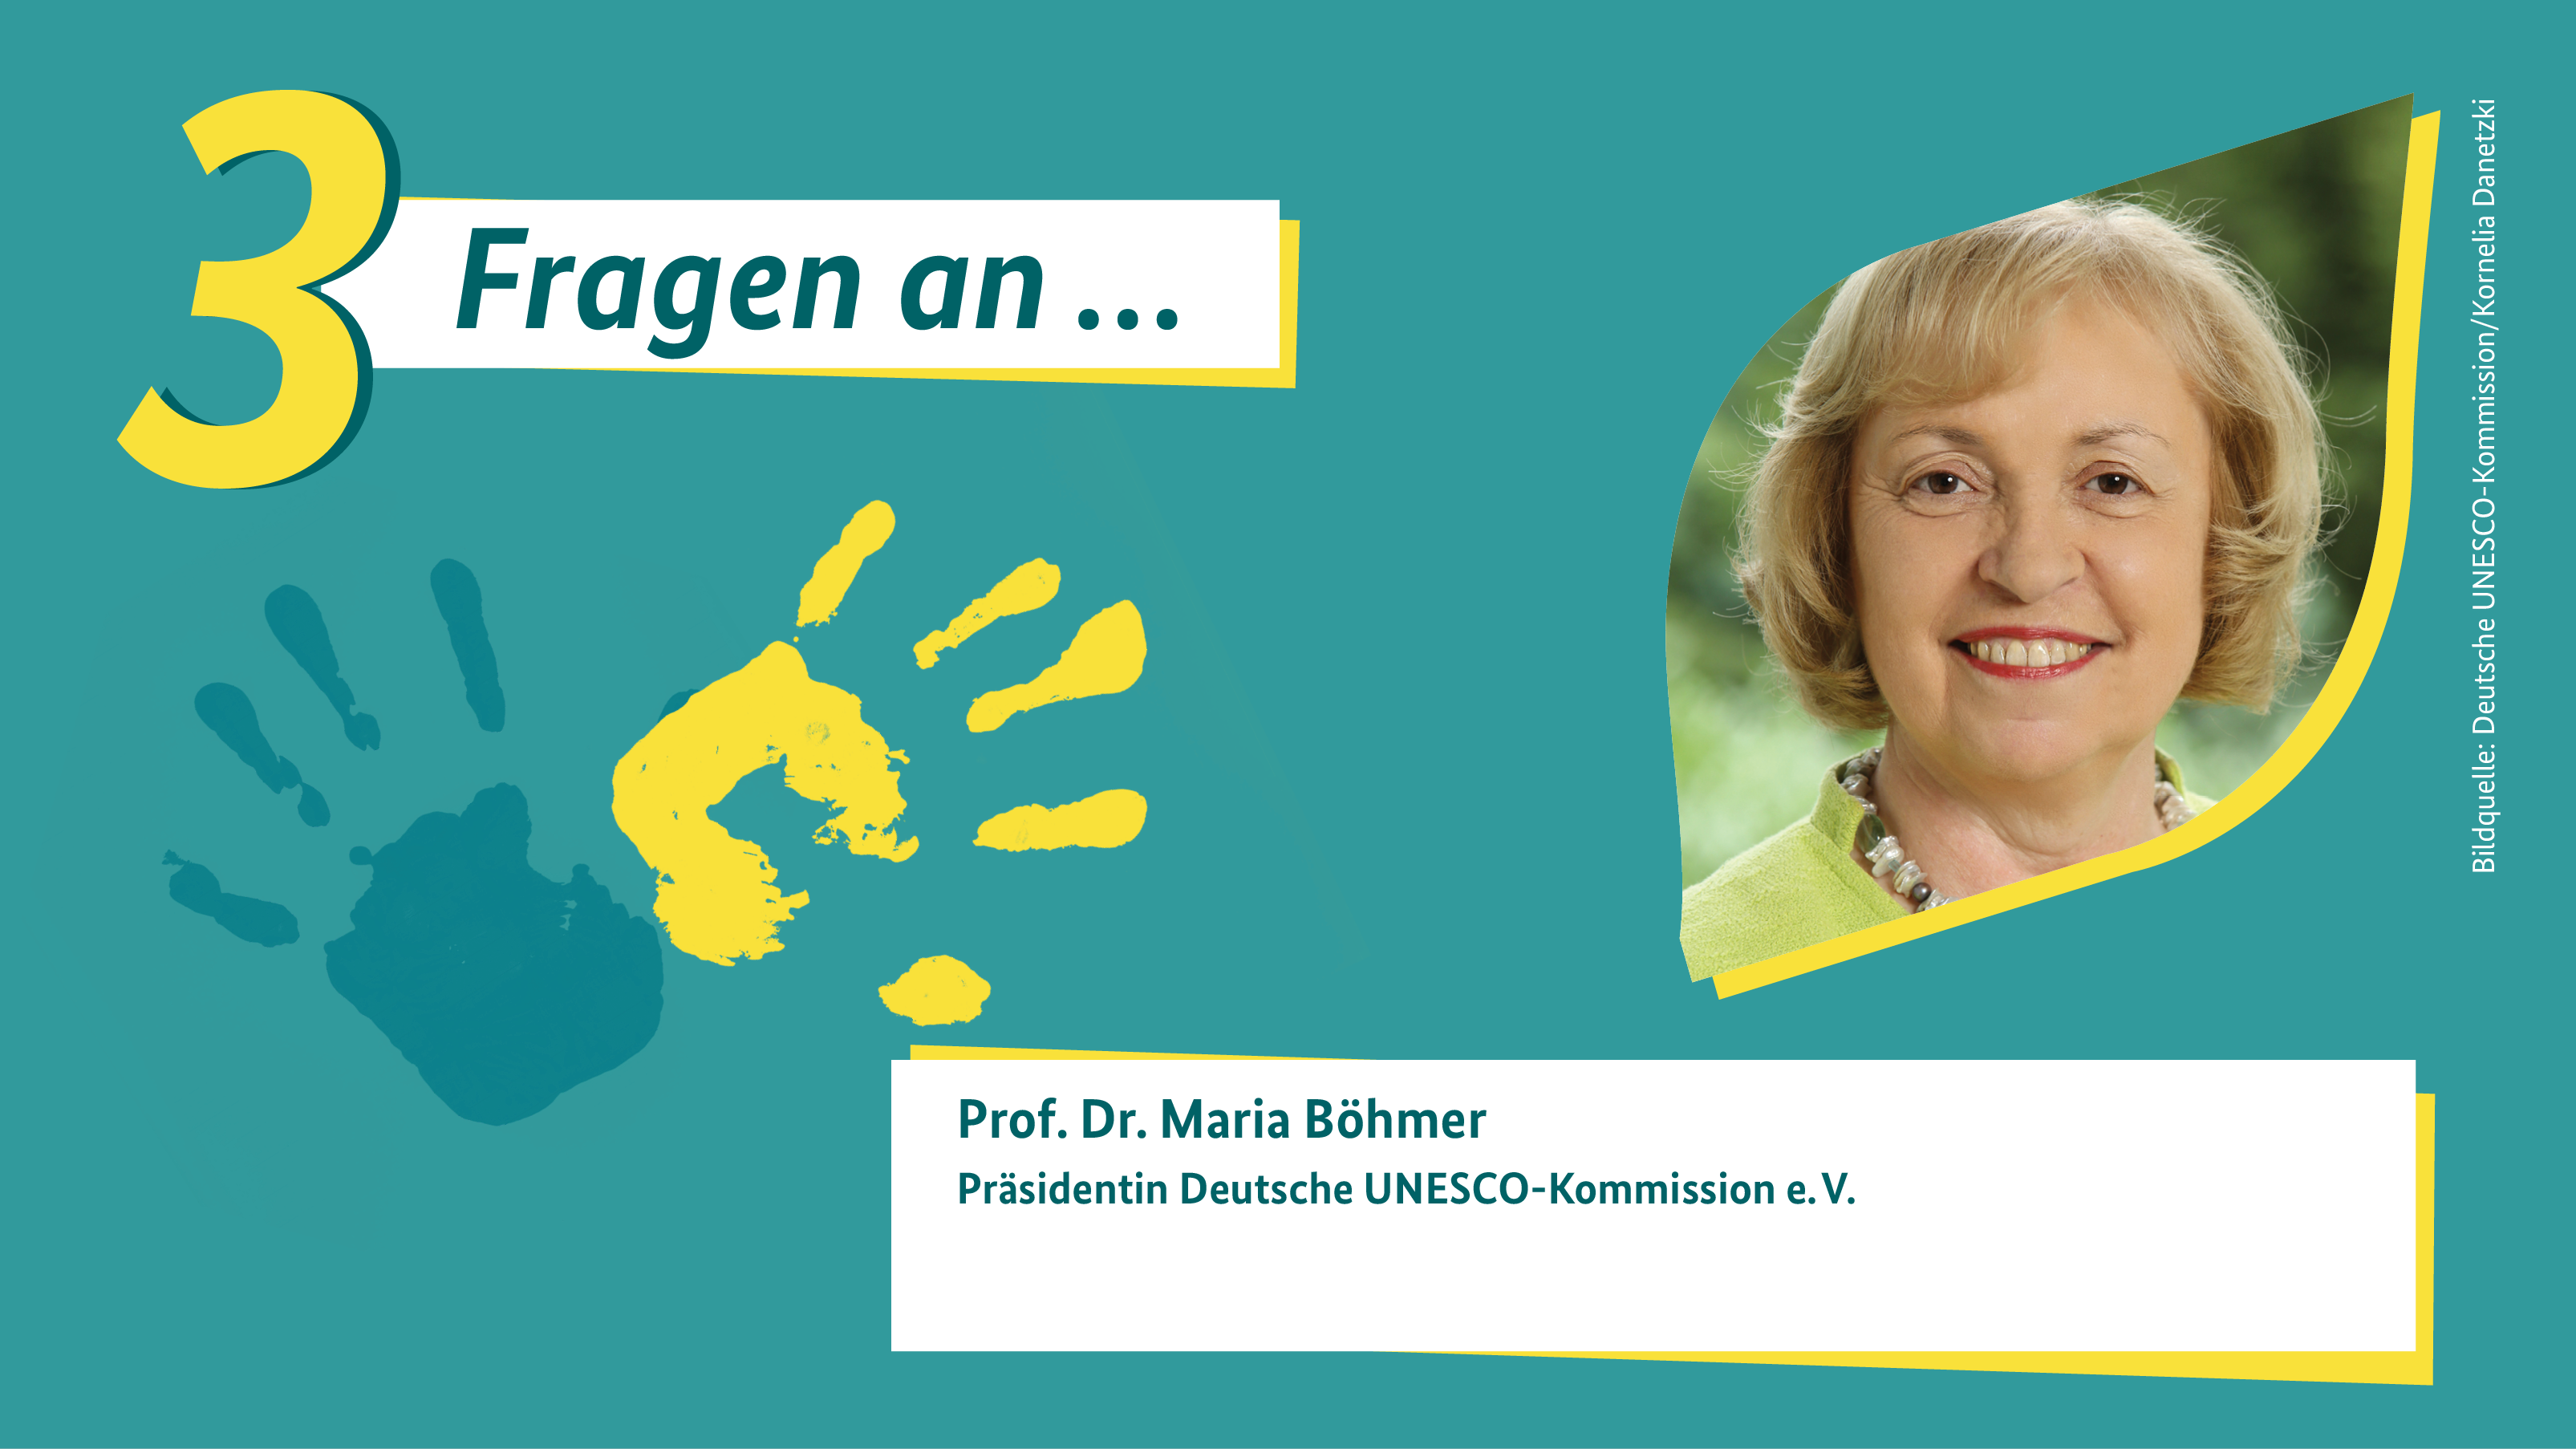 Grafik zu den 3 Fragen an Prof. Dr. Maria Böhmer, Präsidentin der Deutschen UNESCO-Kommission